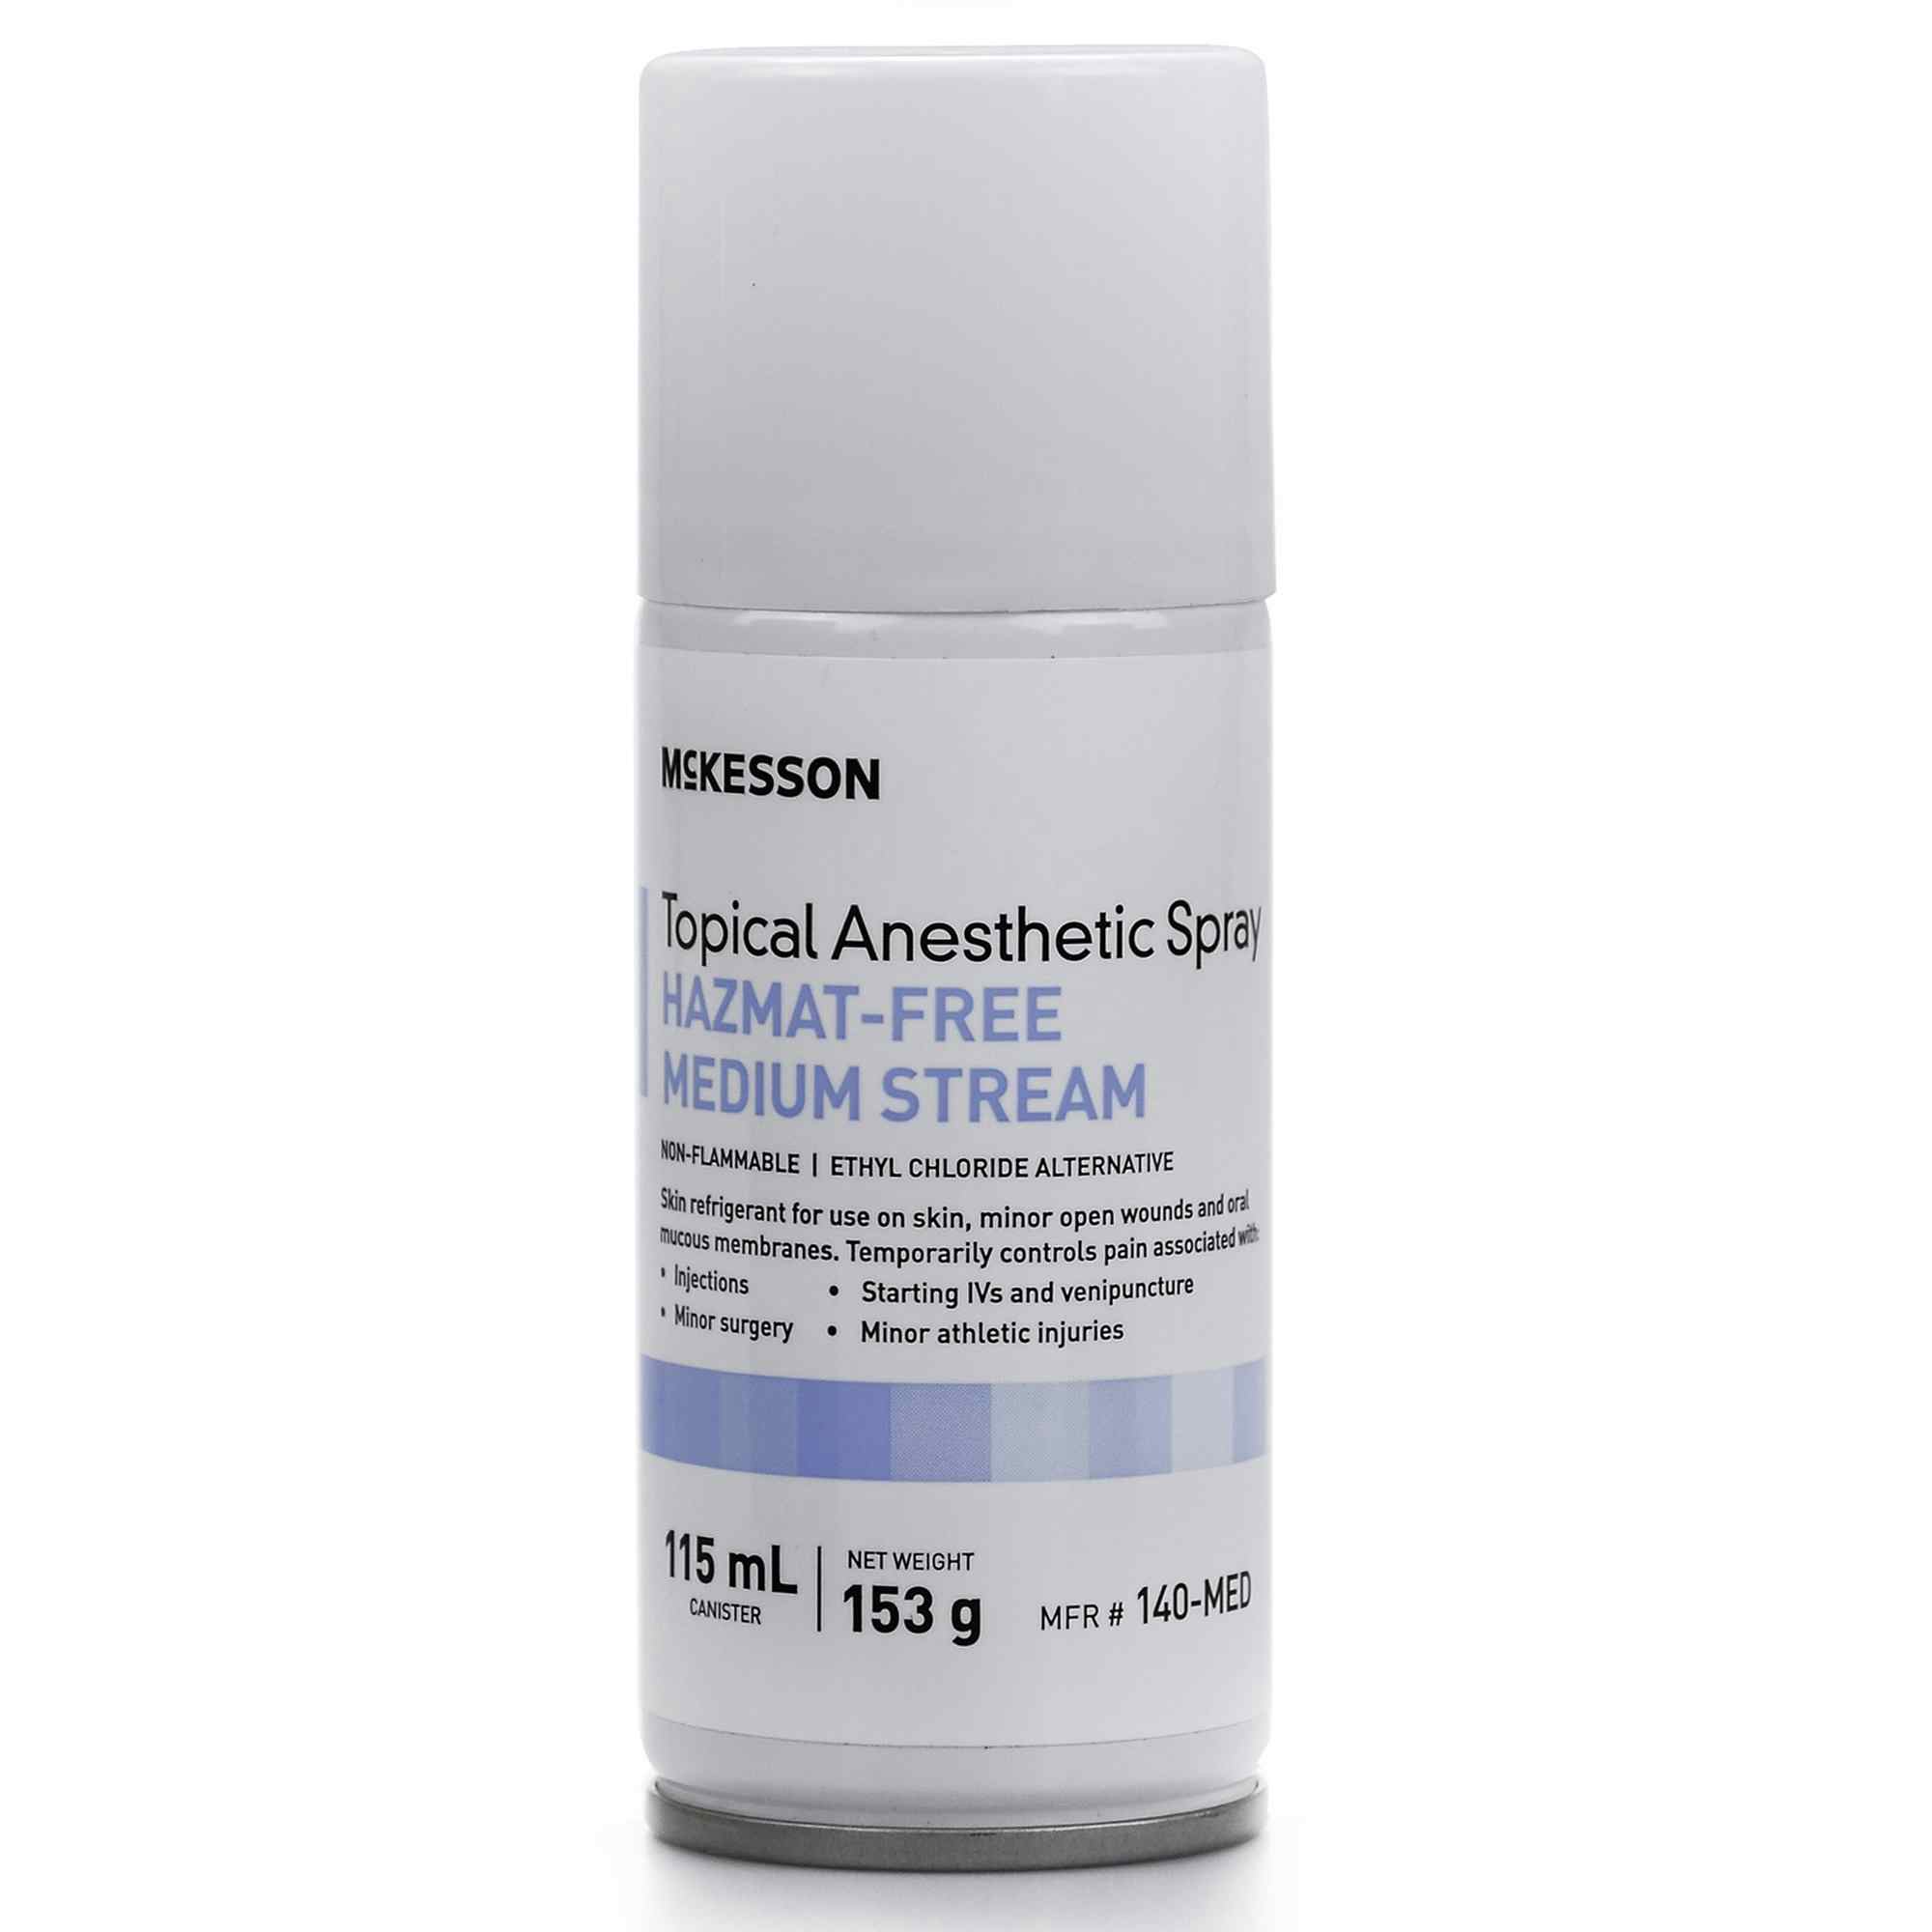 McKesson Hazmat-Free Medium Stream Topical Anesthetic Spray, 115 mL, 140-MED, 1 Bottle